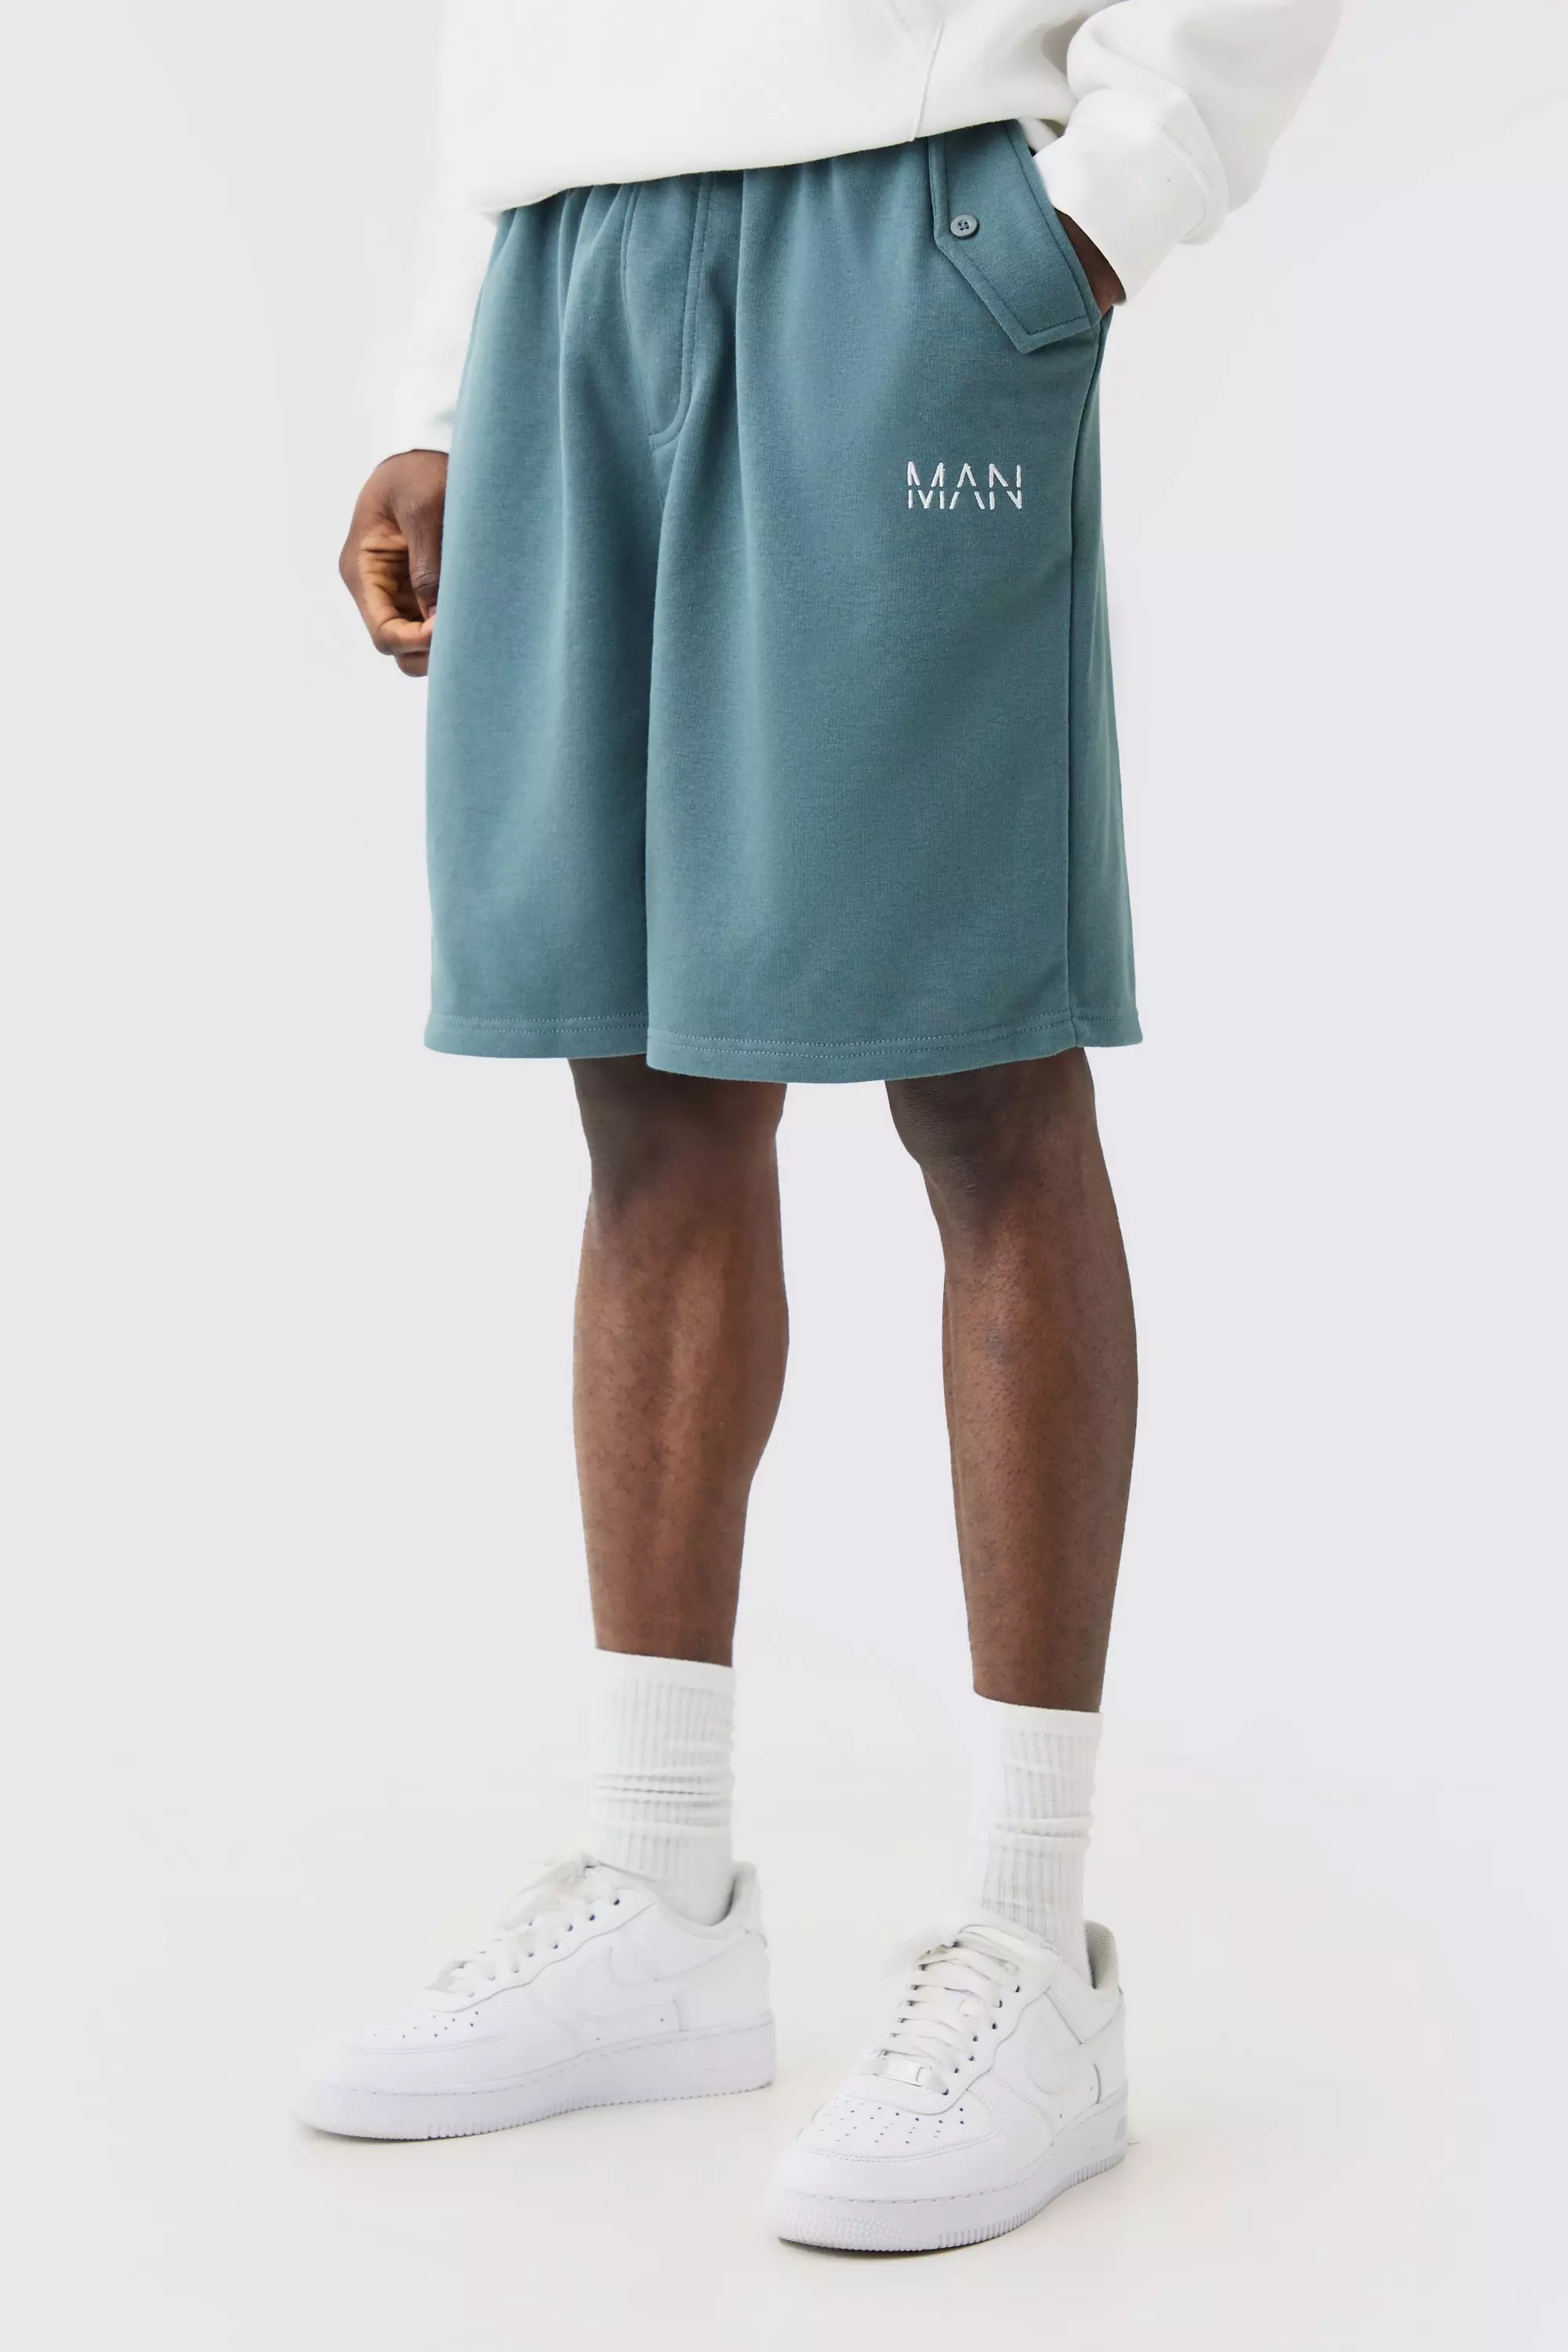 Oversized Drop Crotch Man Jersey Shorts slate blue